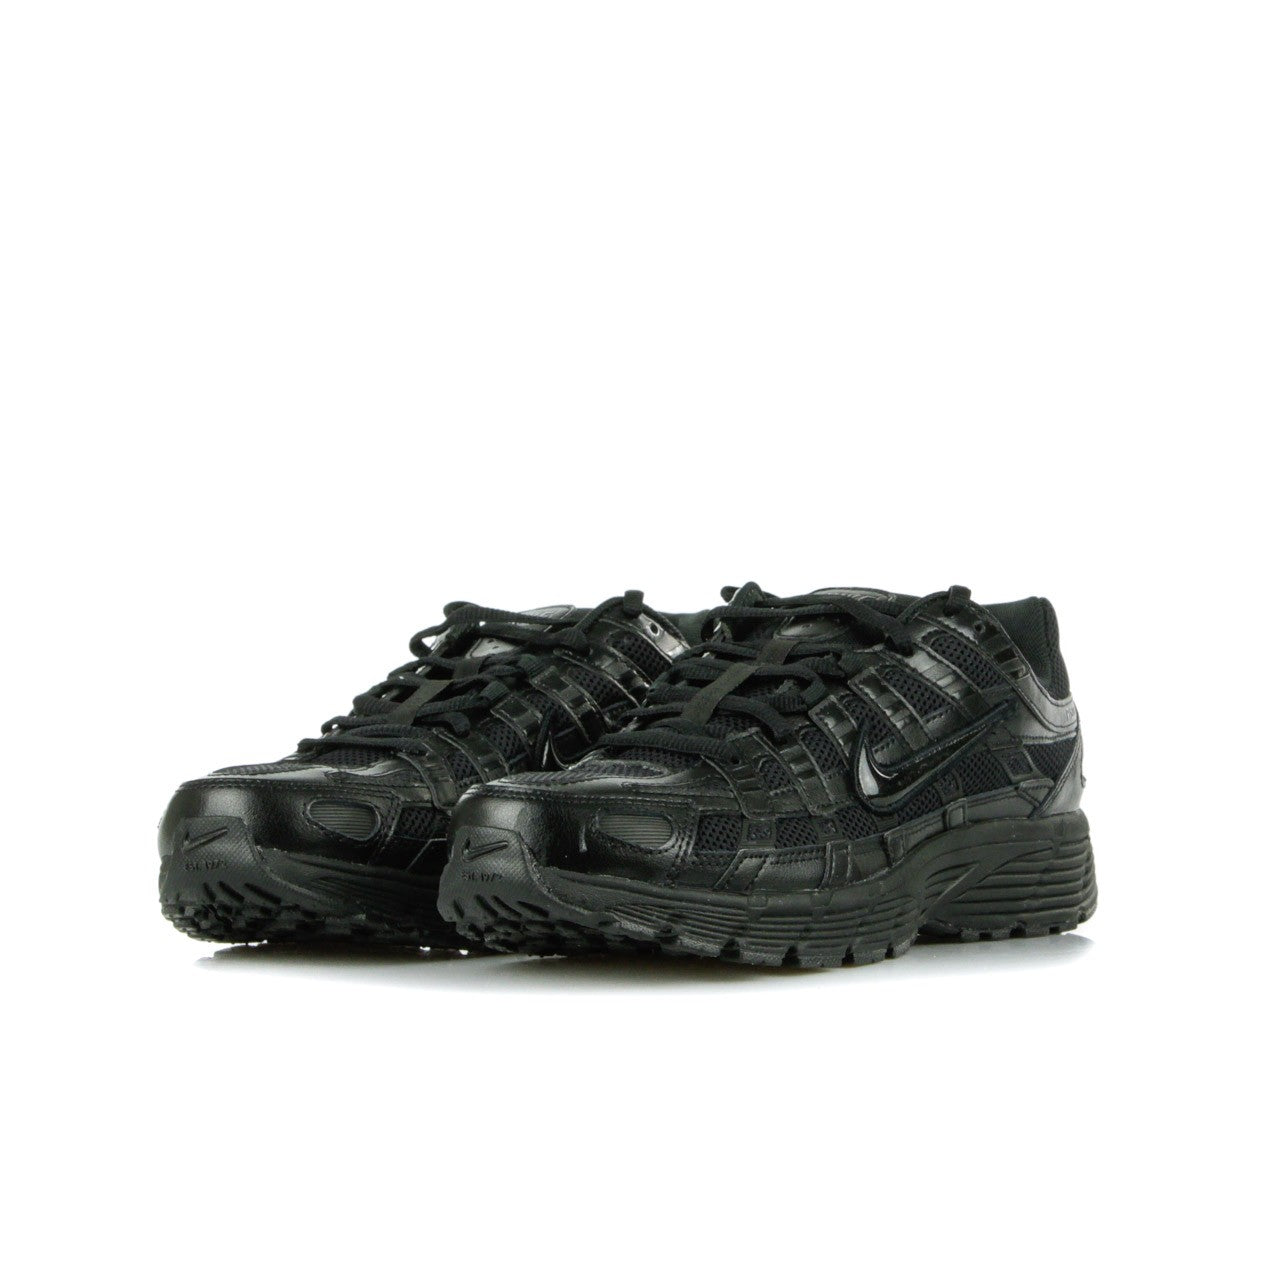 Low Men's Shoe P-6000 Black/black